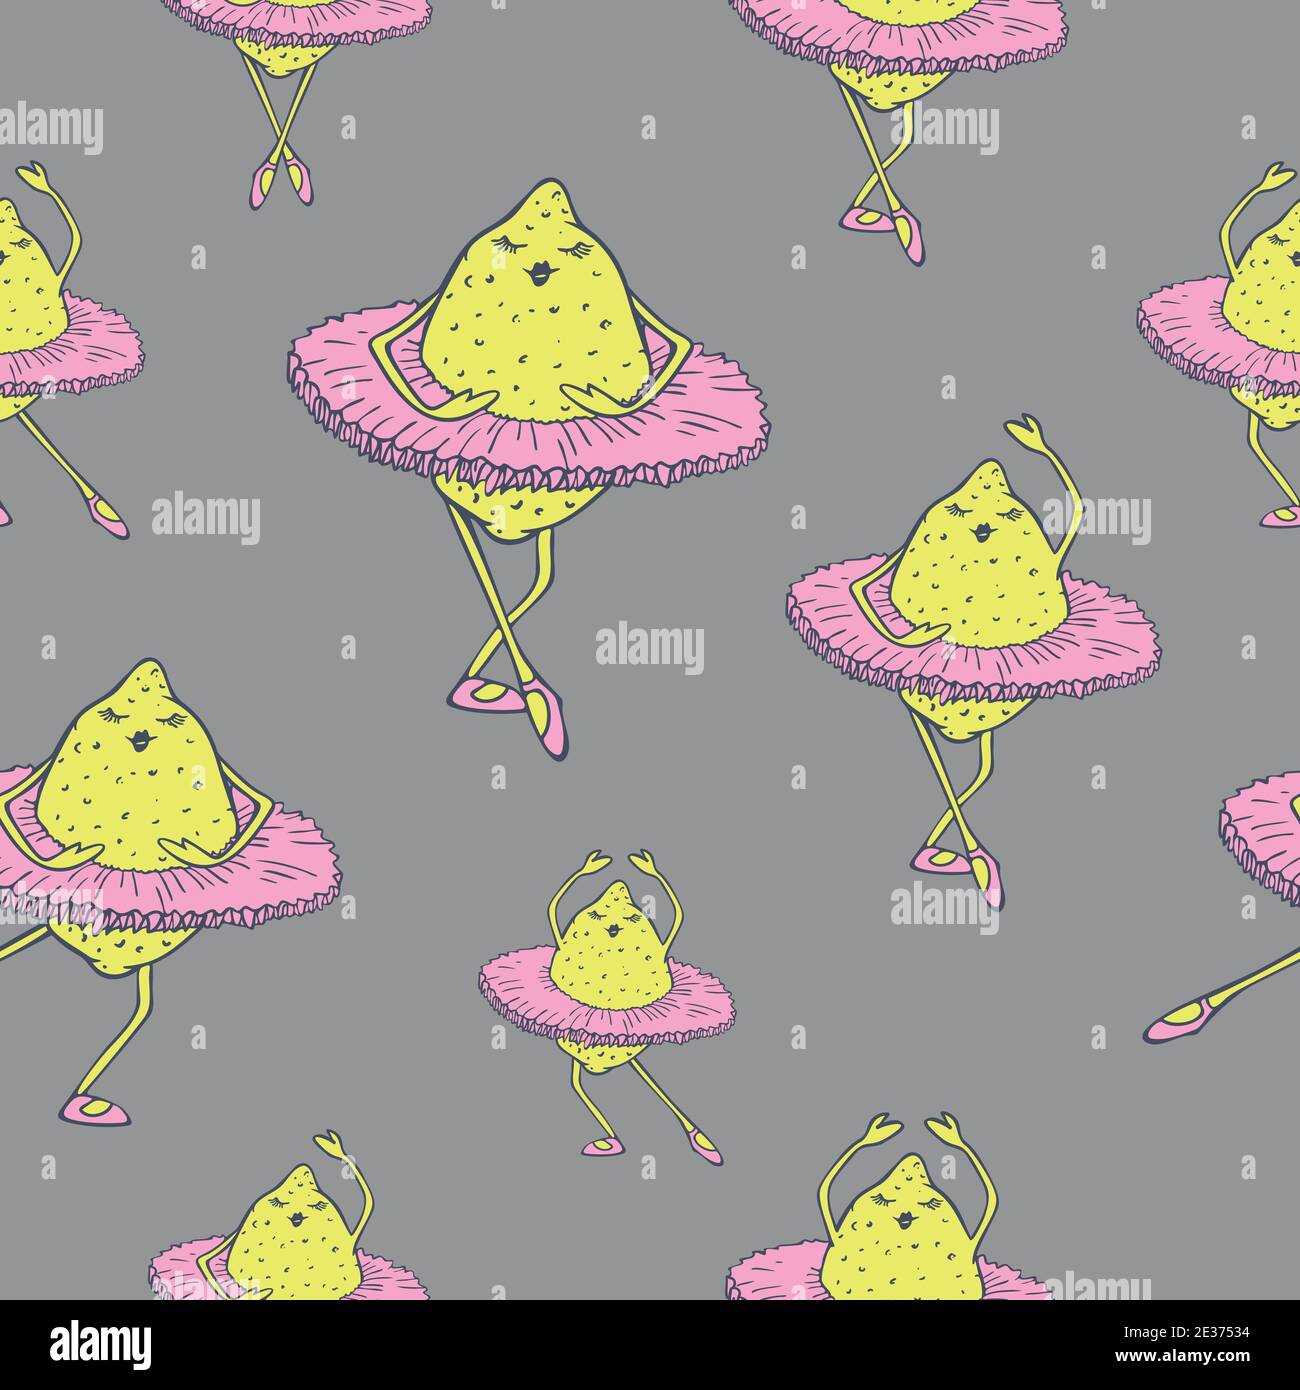 Vector seamless pattern of lemons dancing in ballet tutu. Dancing fruits design. Stock Vector